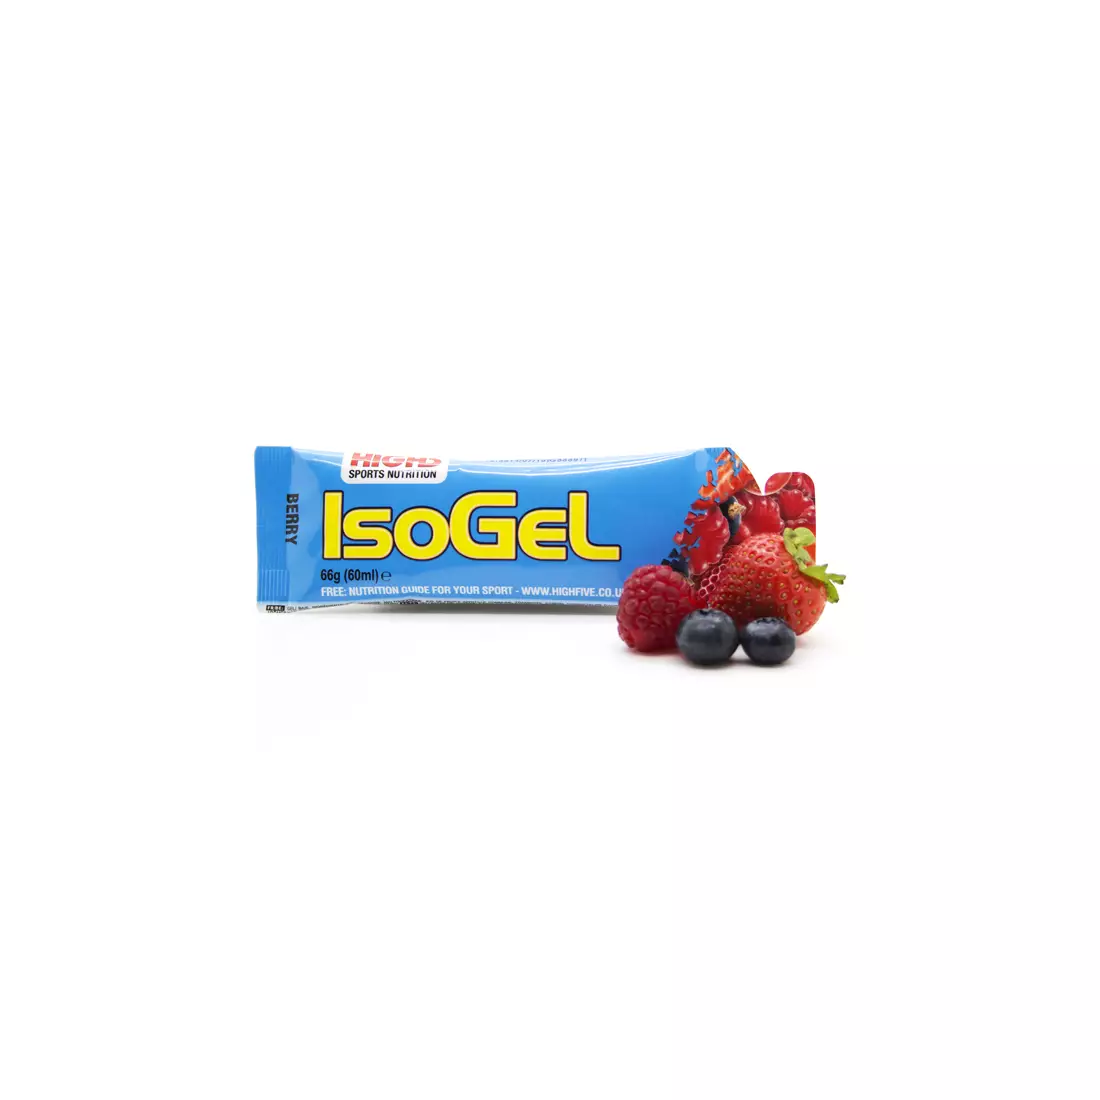 HIGH5 IsoGel Energy-Gel-Geschmack: Blaubeerkapazität. 60 ml